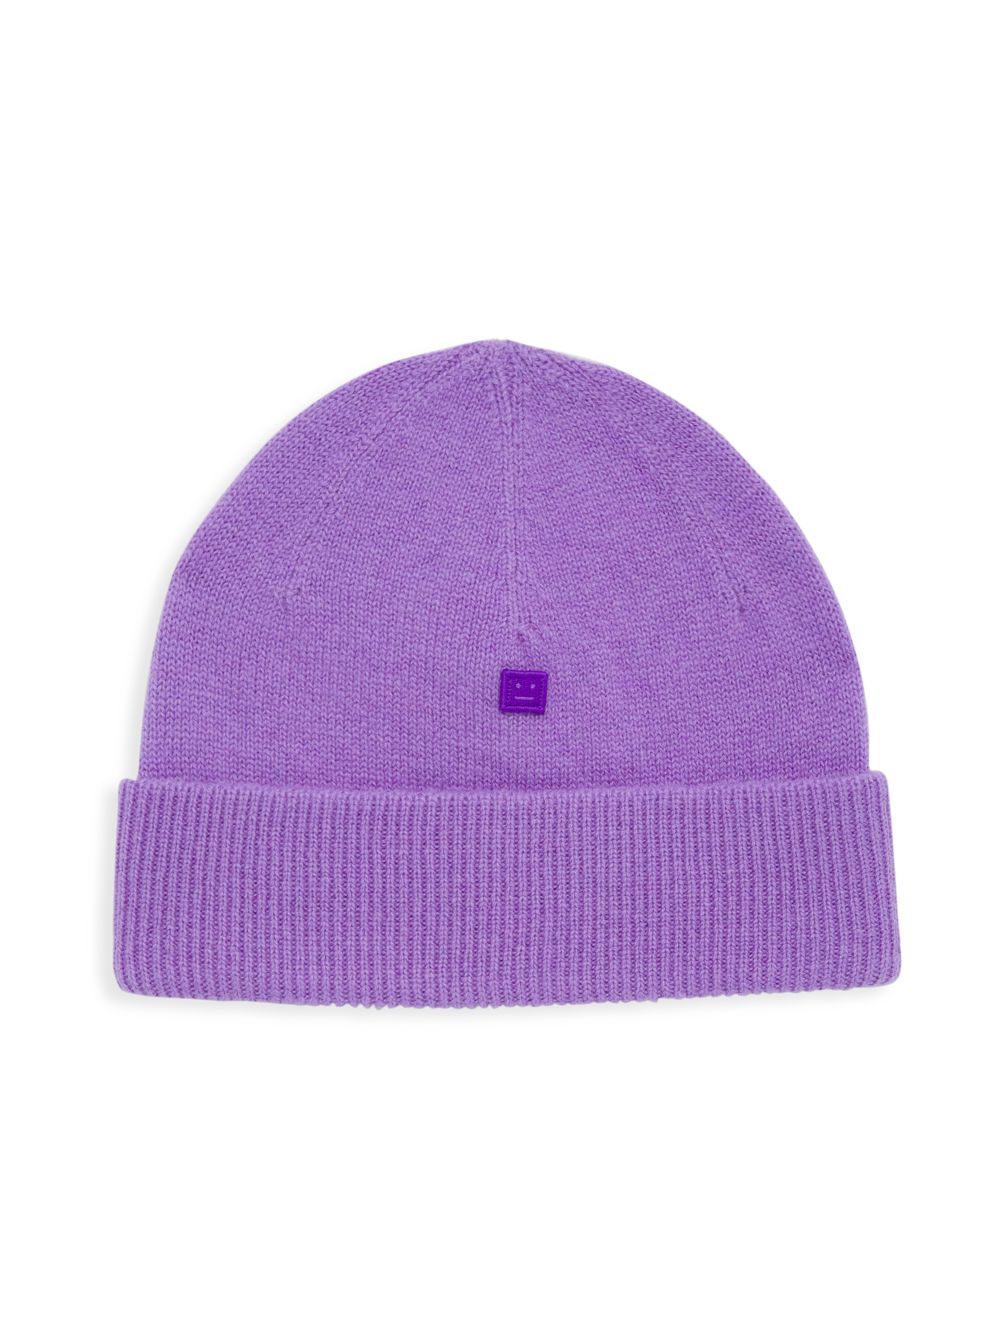 Шерстяная шапка Kana Face Acne Studios, фиолетовый шерстяная шапка kana face acne studios фиолетовый